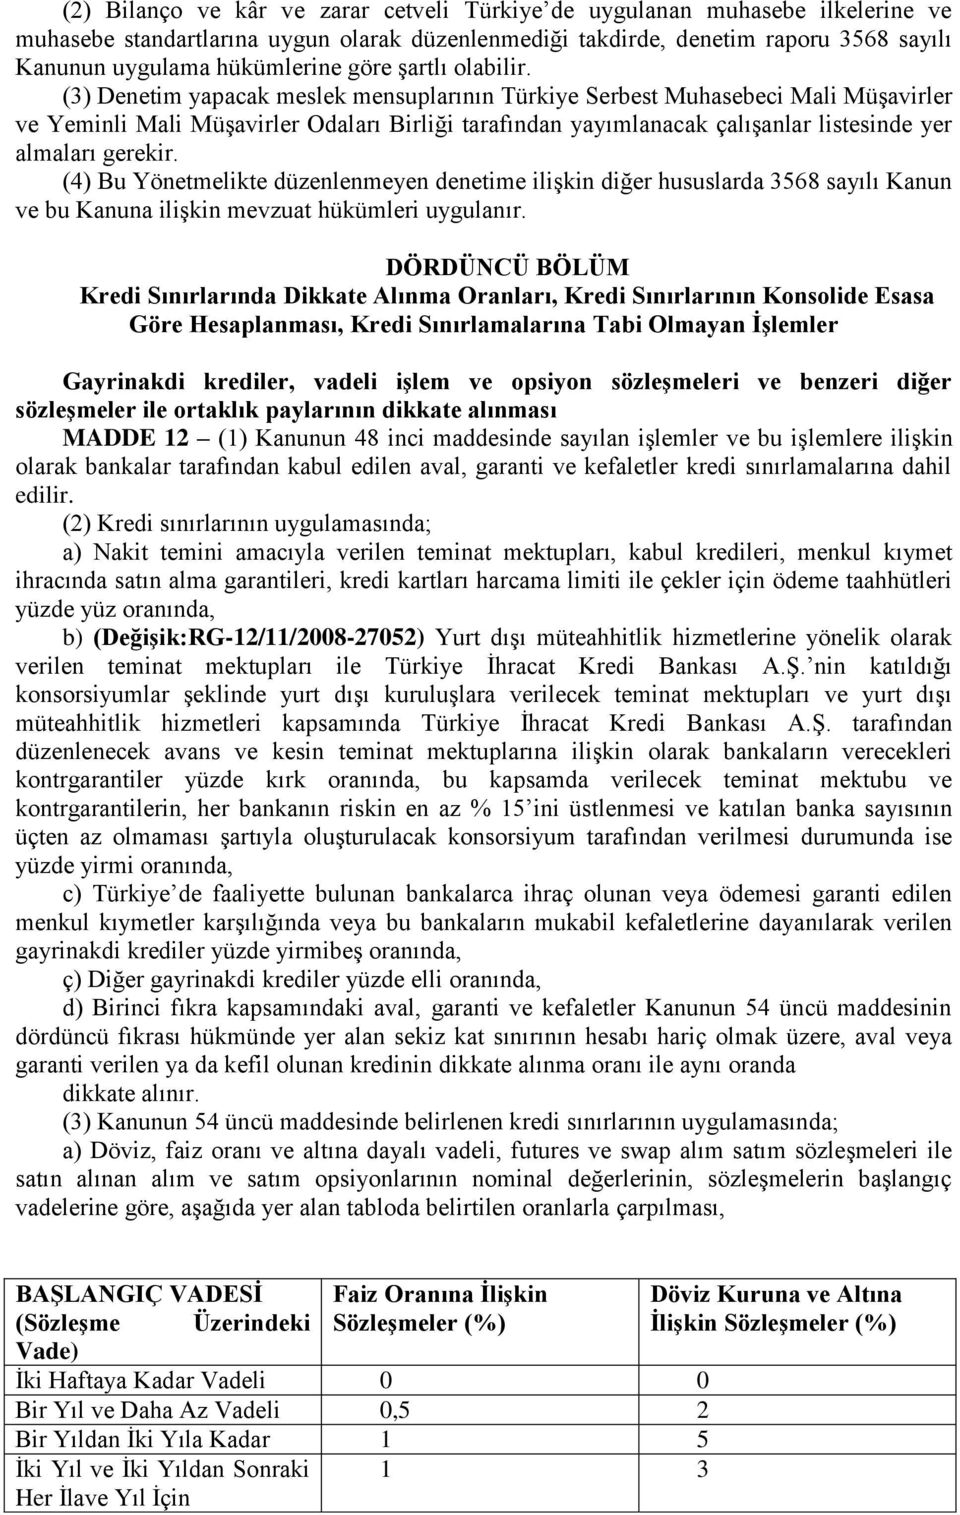 (3) Denetim yapacak meslek mensuplarının Türkiye Serbest Muhasebeci Mali Müşavirler ve Yeminli Mali Müşavirler Odaları Birliği tarafından yayımlanacak çalışanlar listesinde yer almaları gerekir.